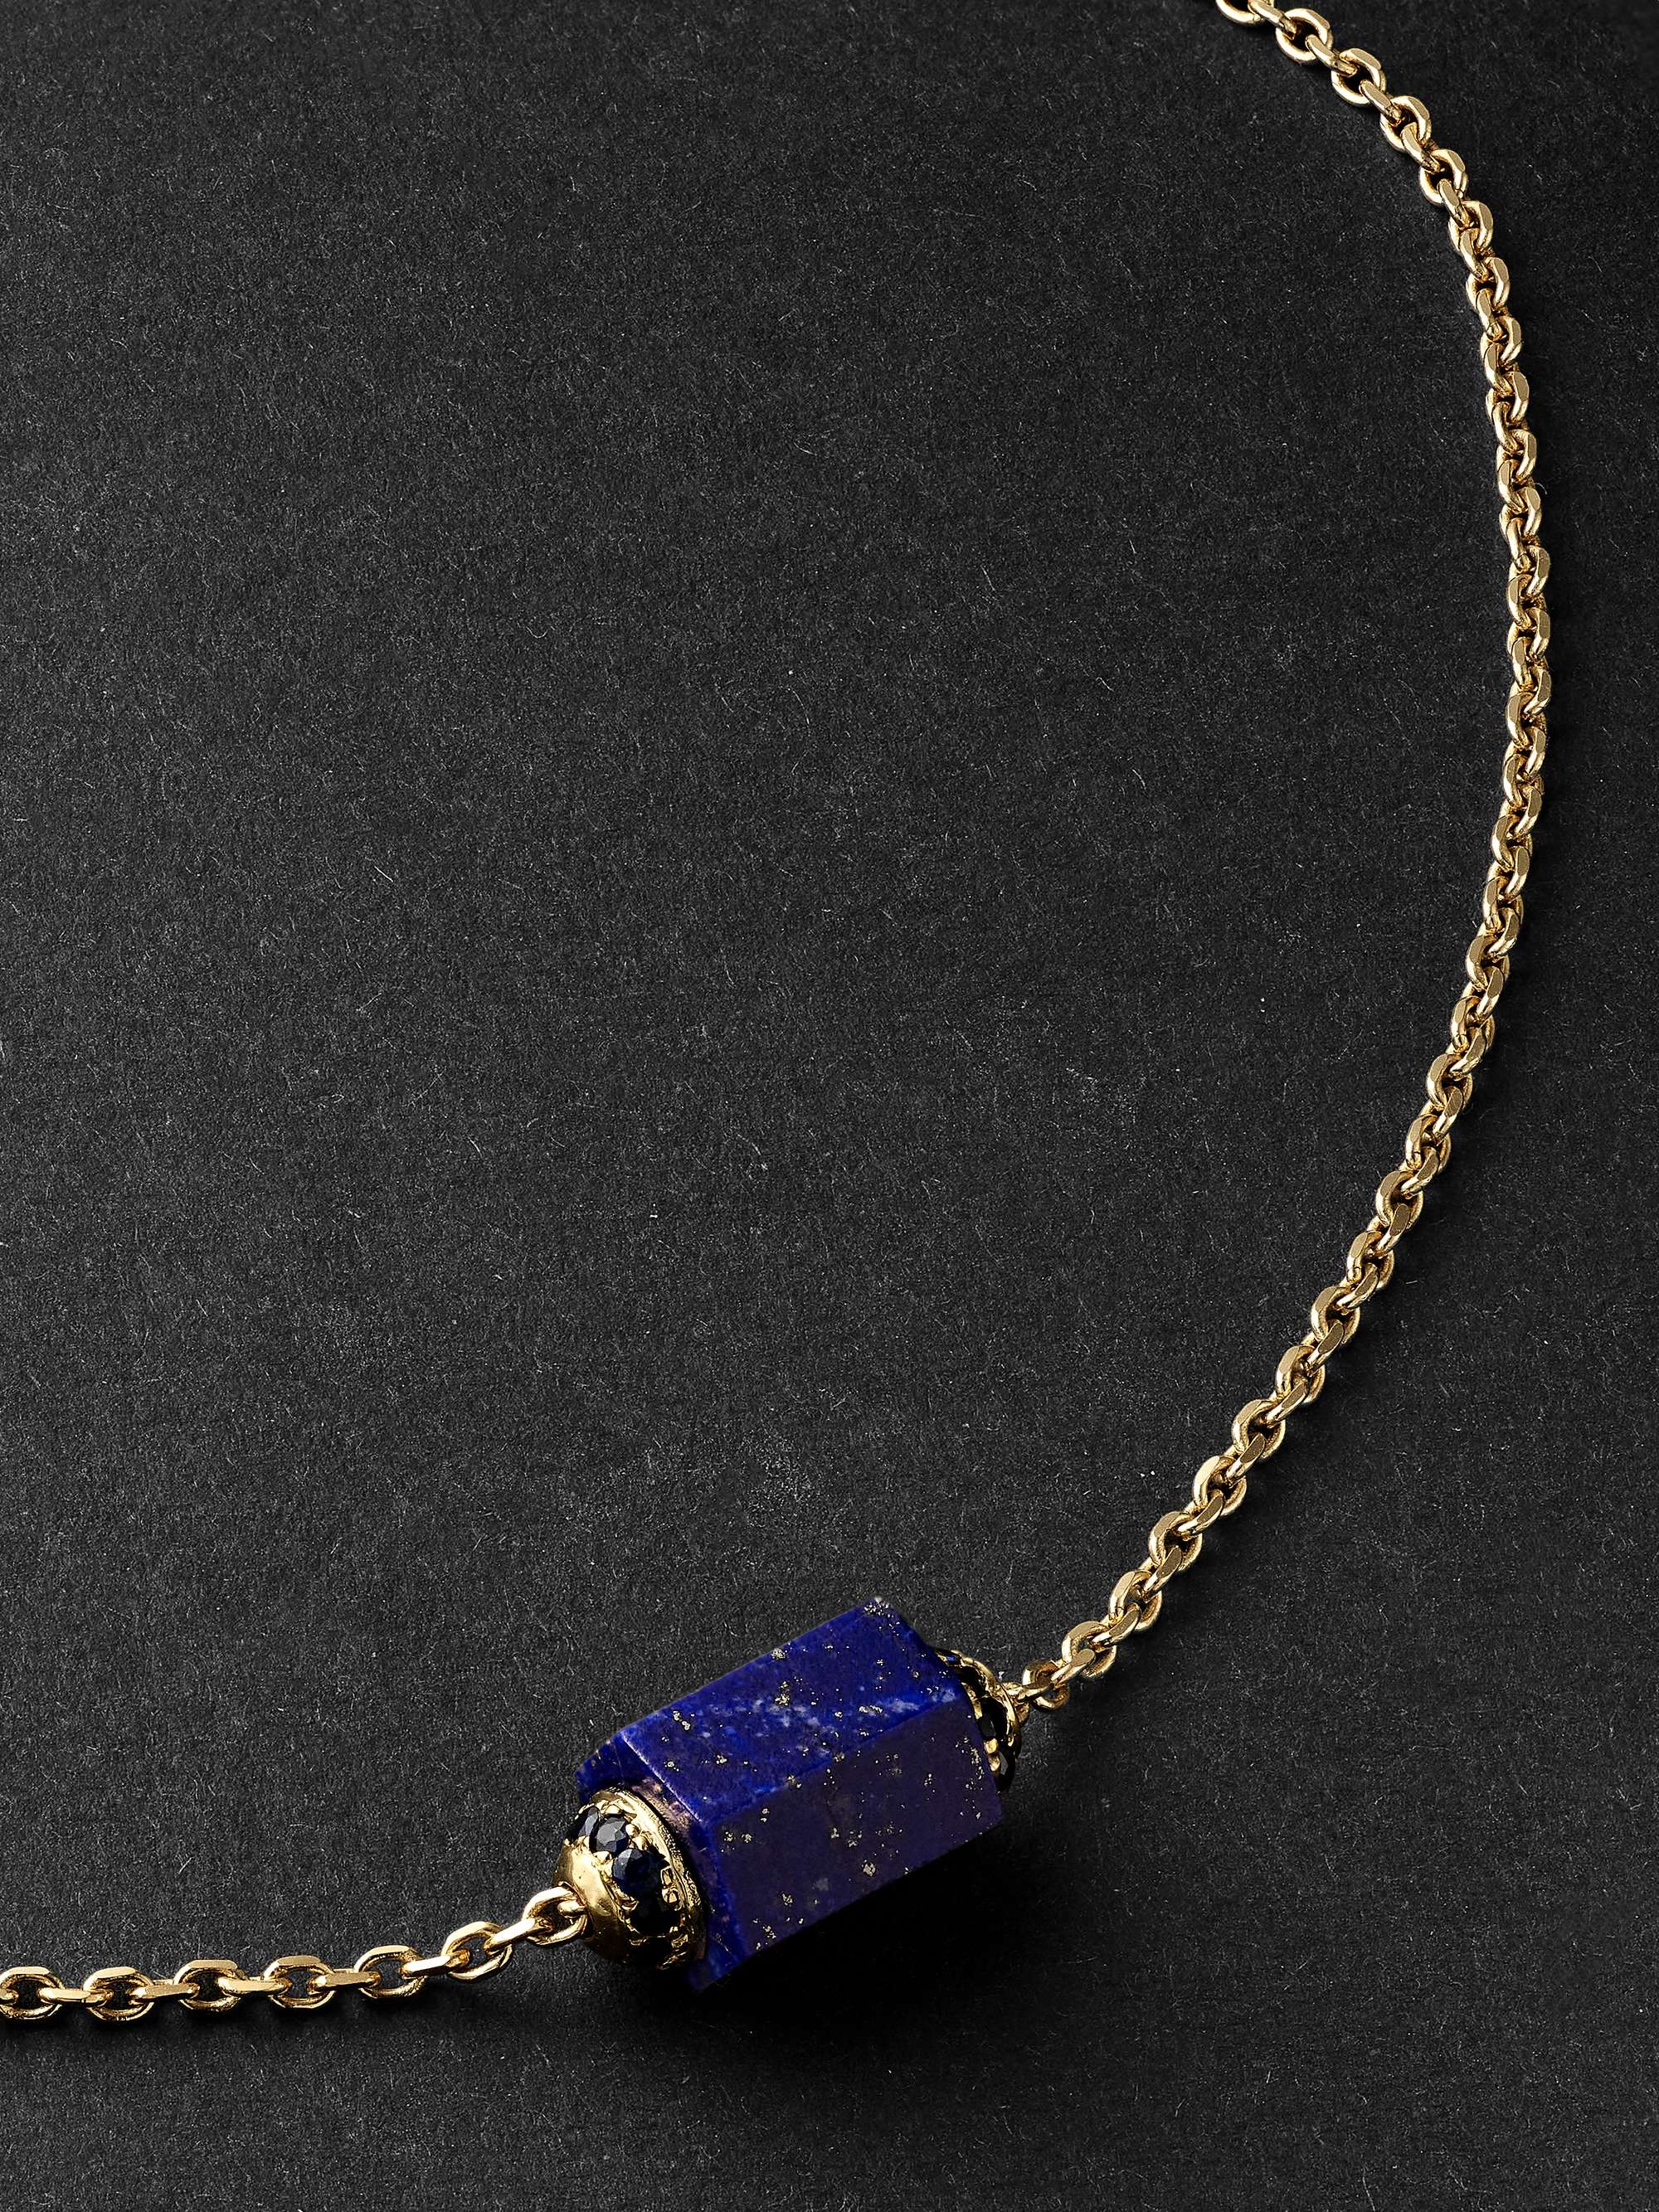 LUIS MORAIS Gold, Lapis and Sapphire Necklace